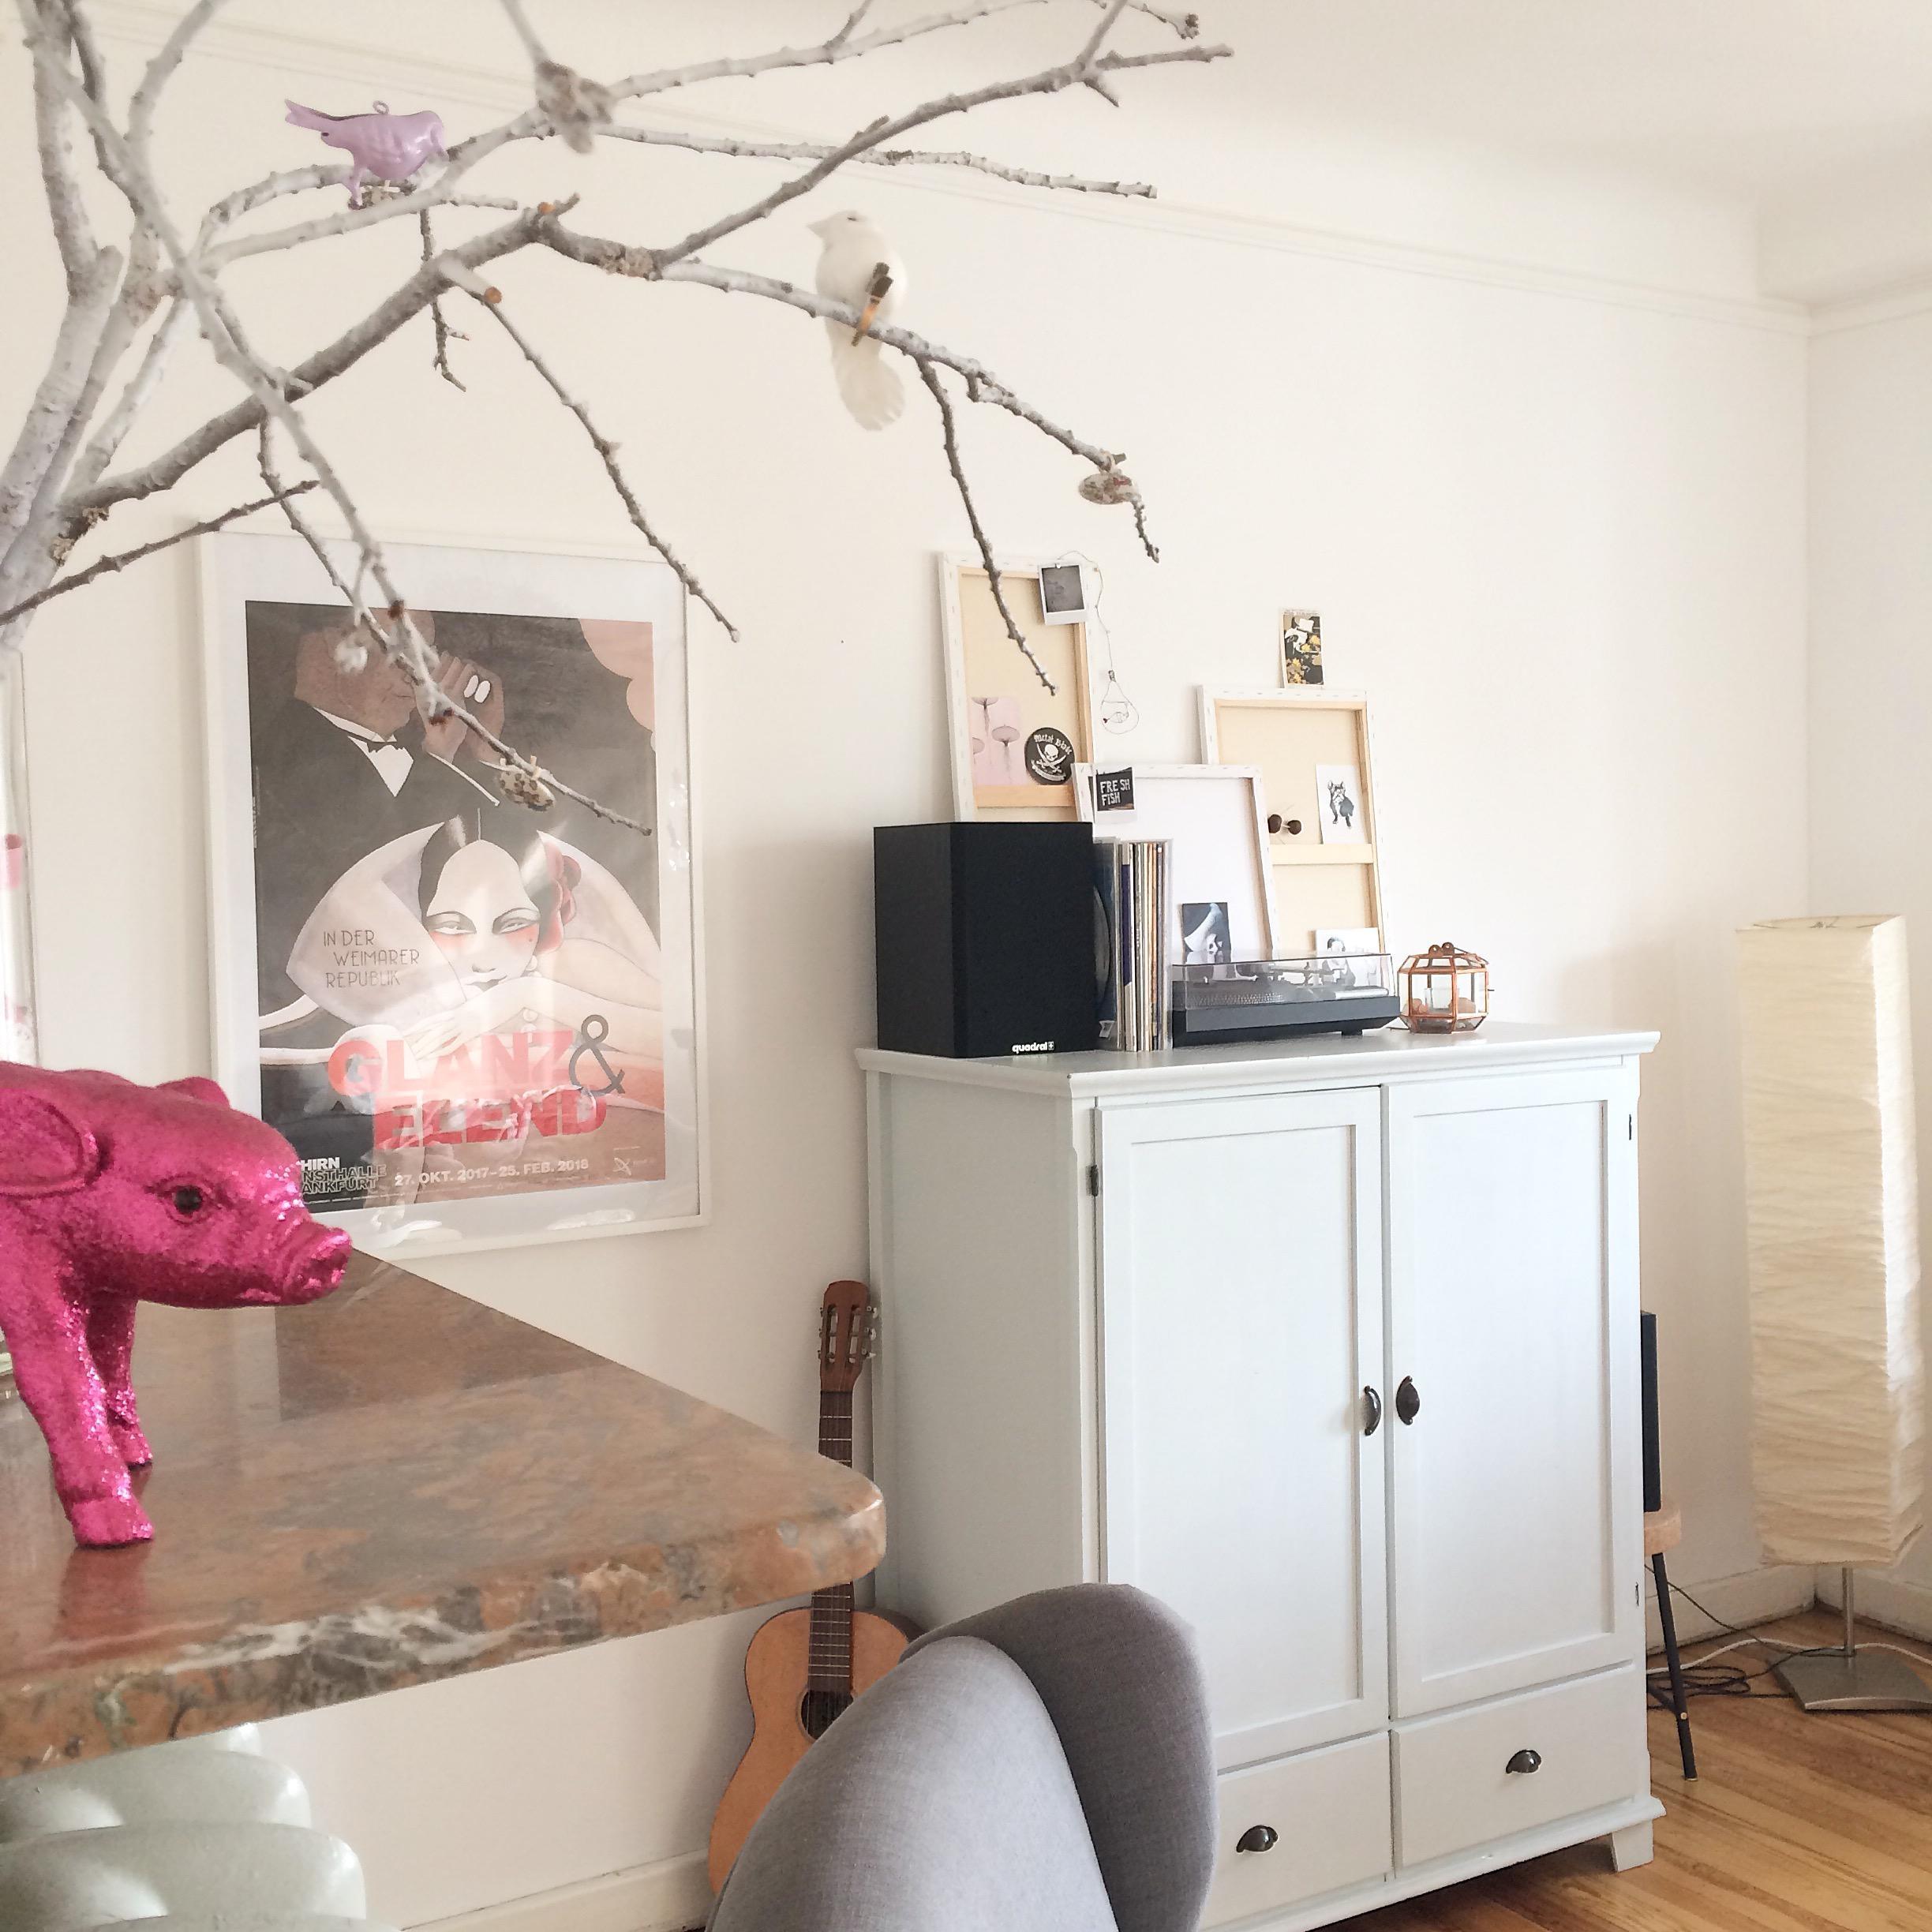 Um die Ecke...
#wohnzimmer #living #altbau #fernsehschrank #pink #interior #deko #music